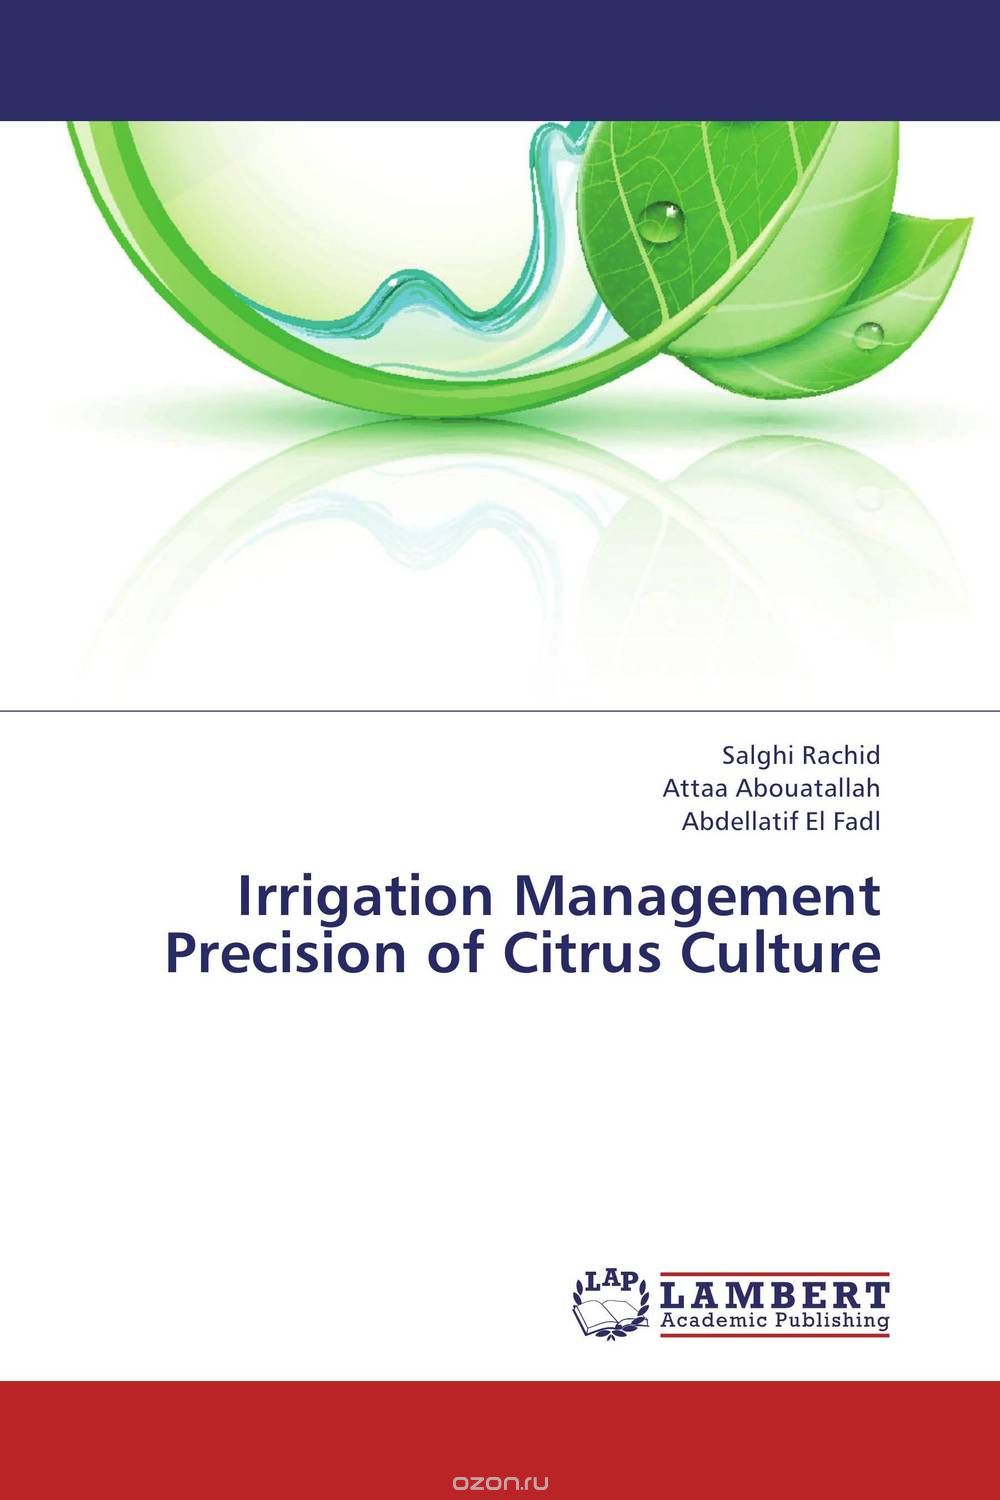 Скачать книгу "Irrigation Management Precision of Citrus Culture"